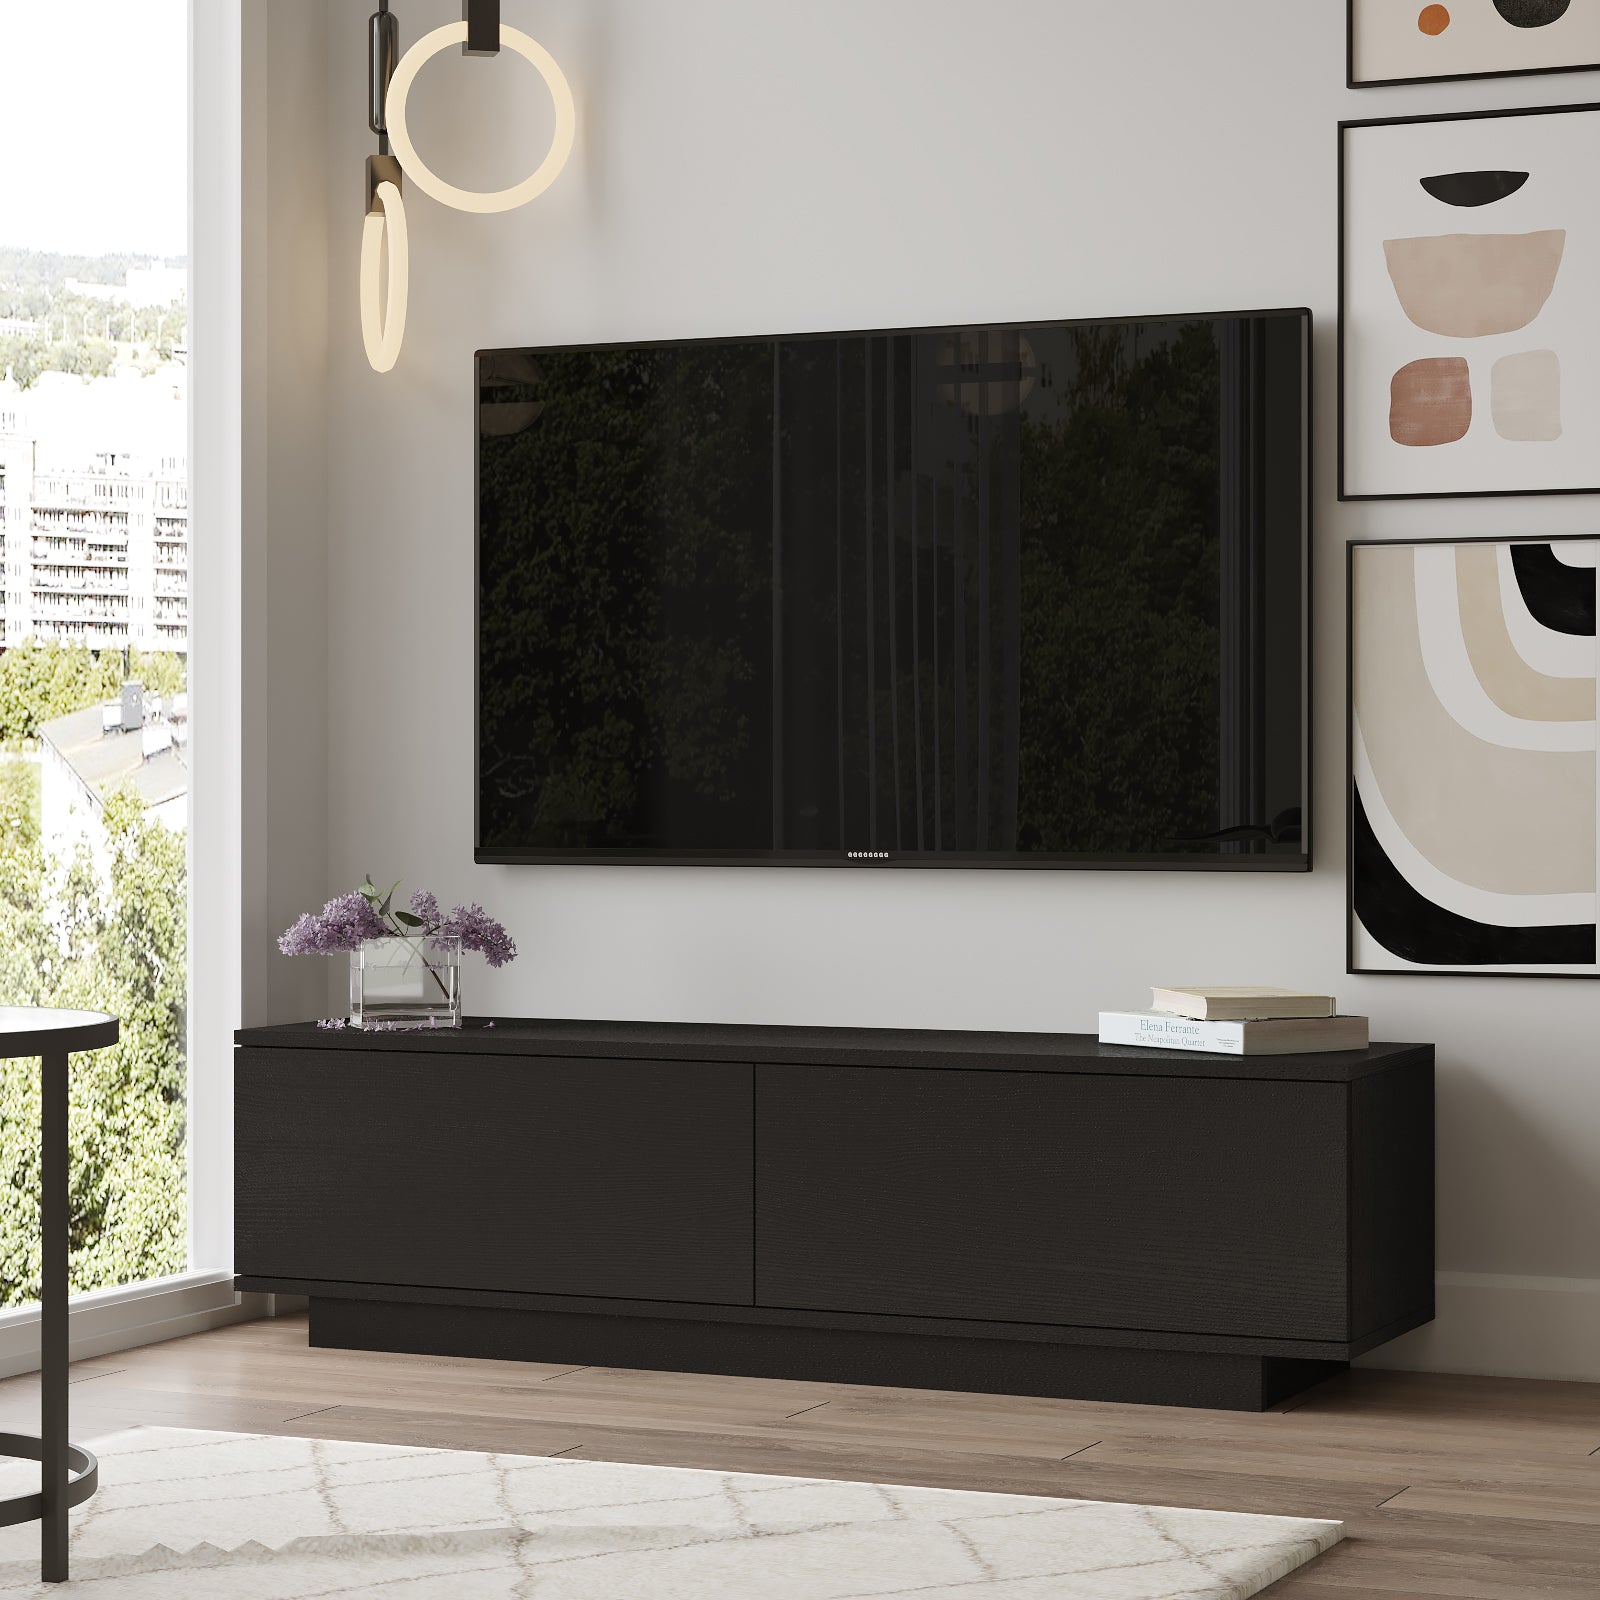 Noir-Meuble TV Celeste noir 140 cm élégant avec rangements pratiques-intégration parfaite dans un salon contemporain